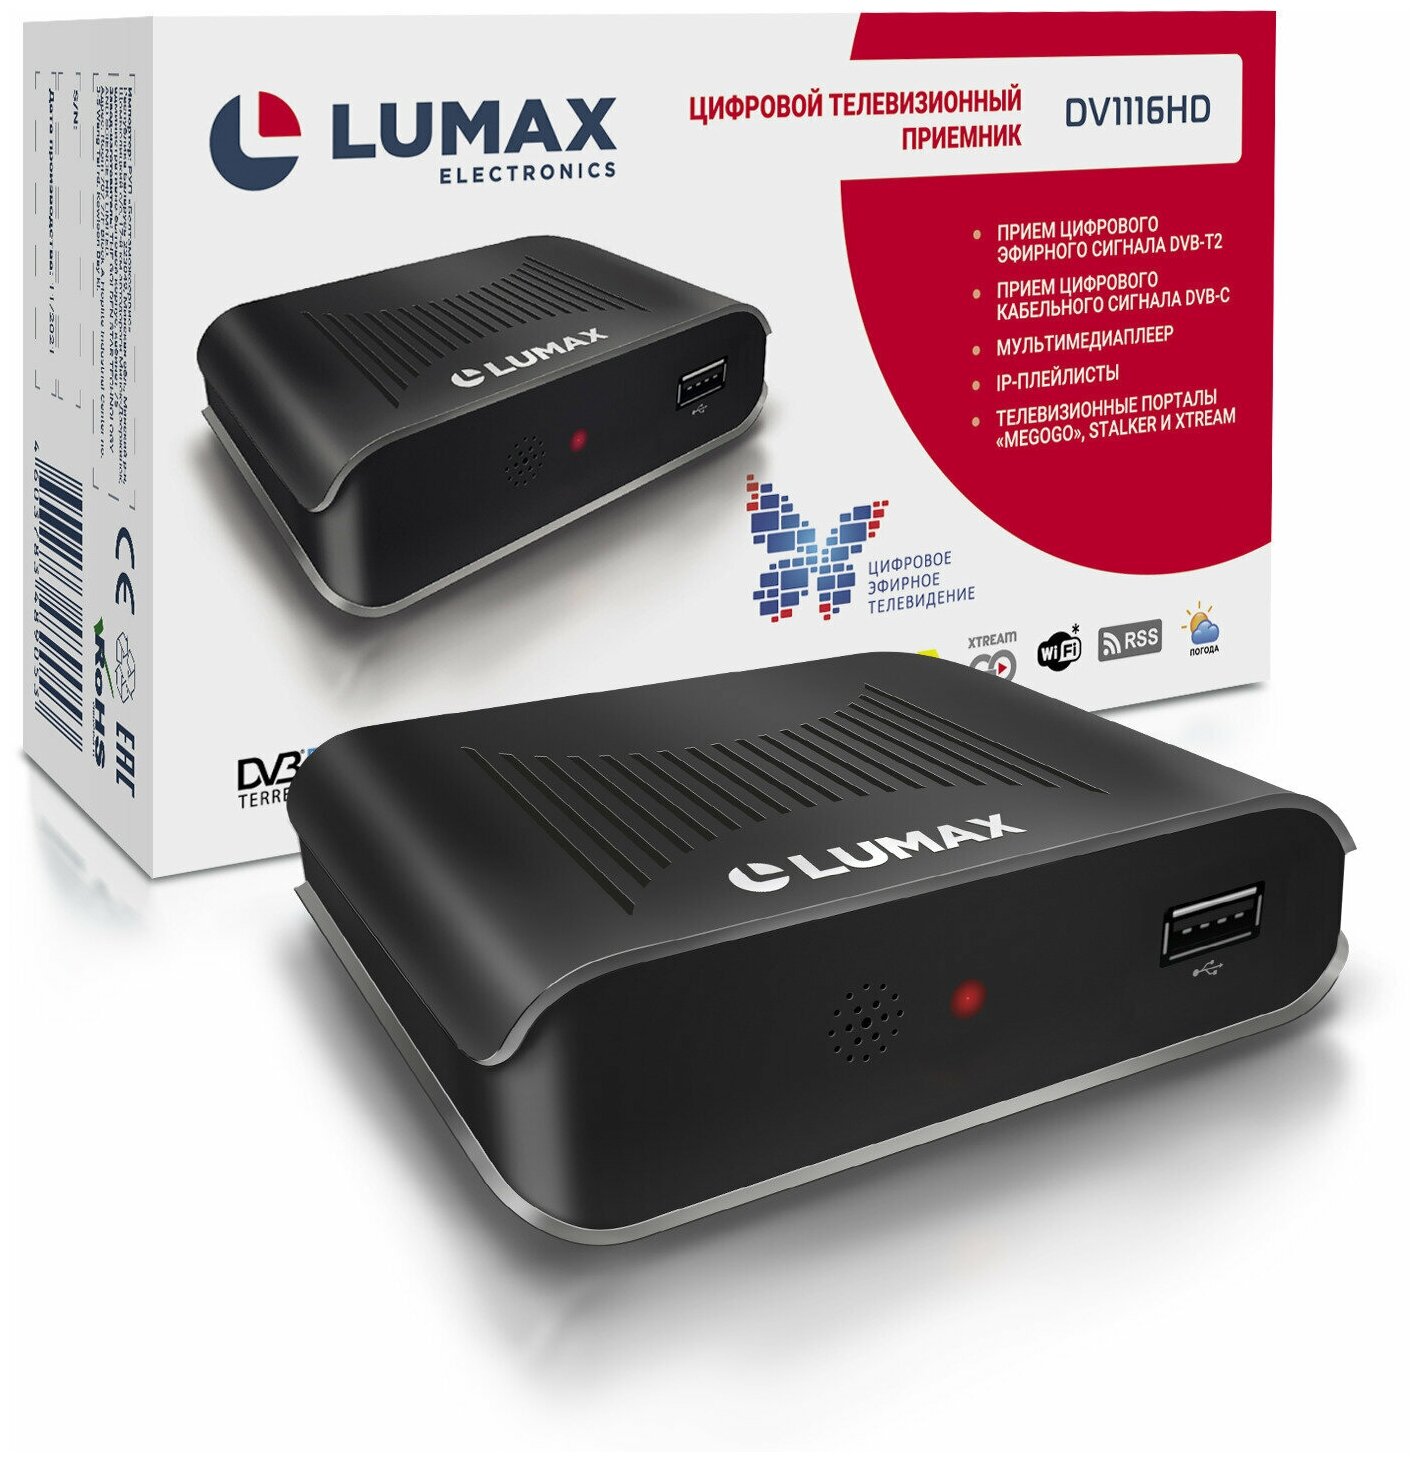 Цифровая приставка Lumax DV1116HD (DVB-T2, DVB-C)